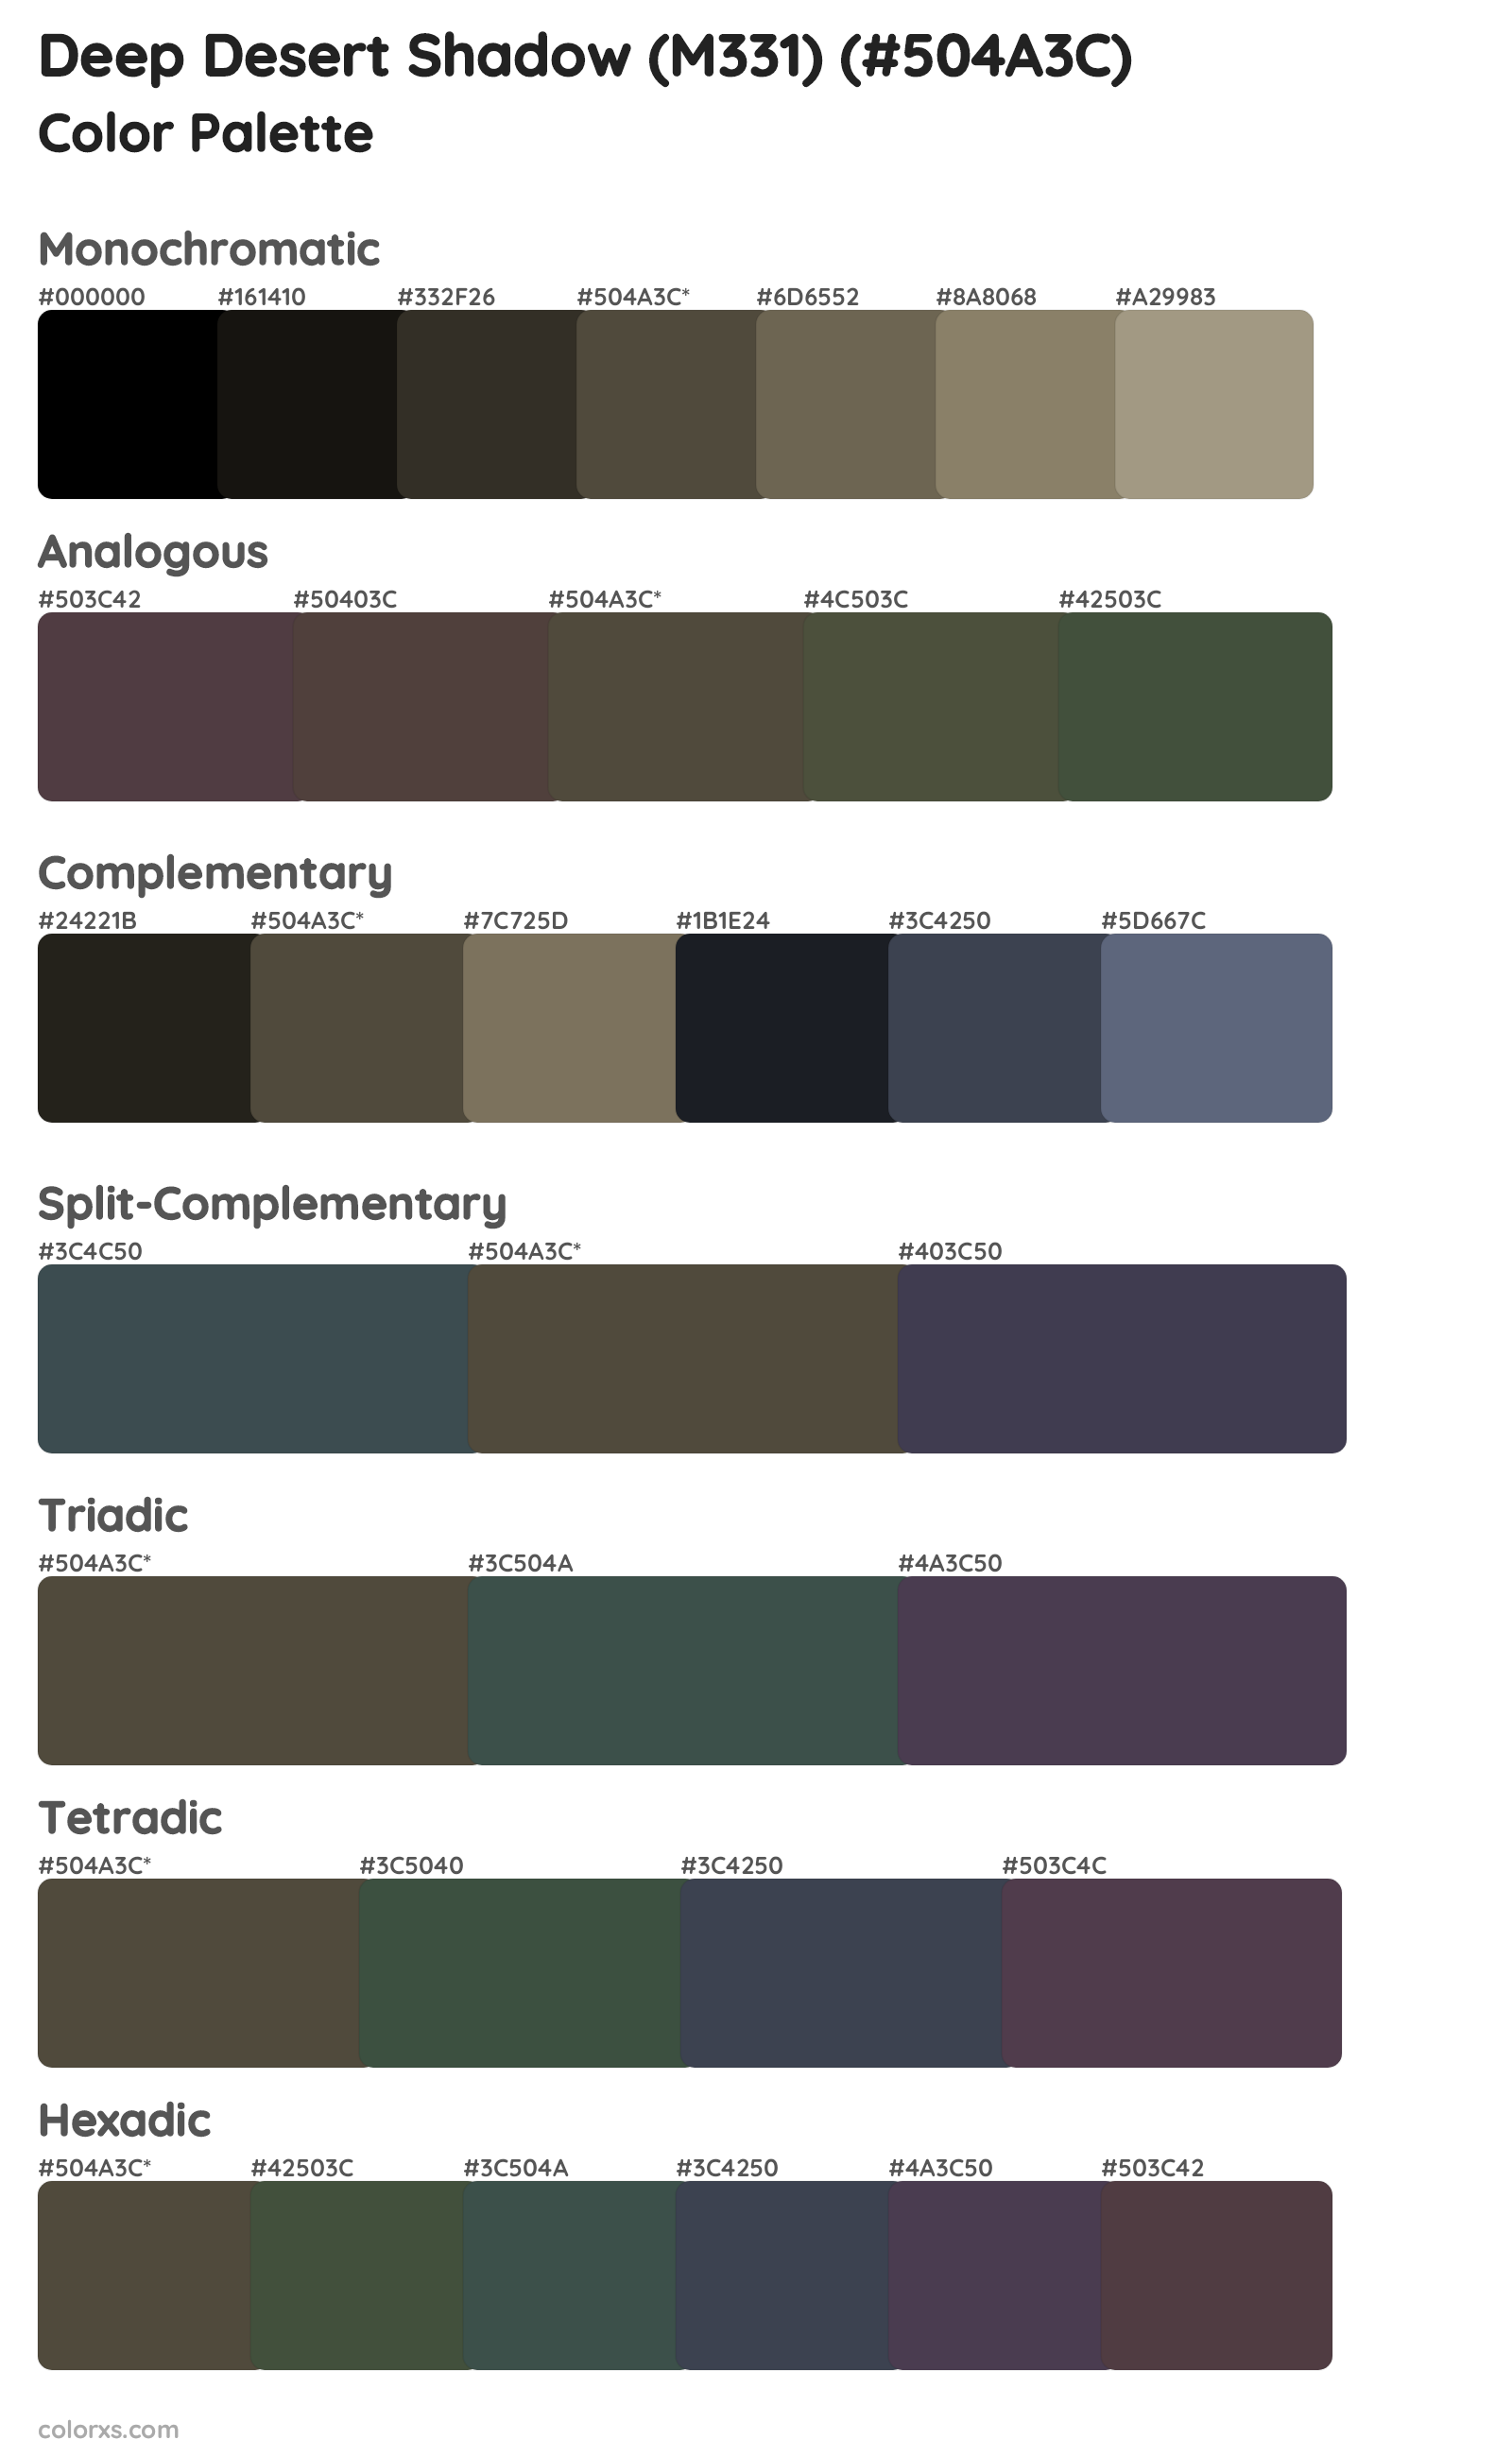 Deep Desert Shadow (M331) Color Scheme Palettes